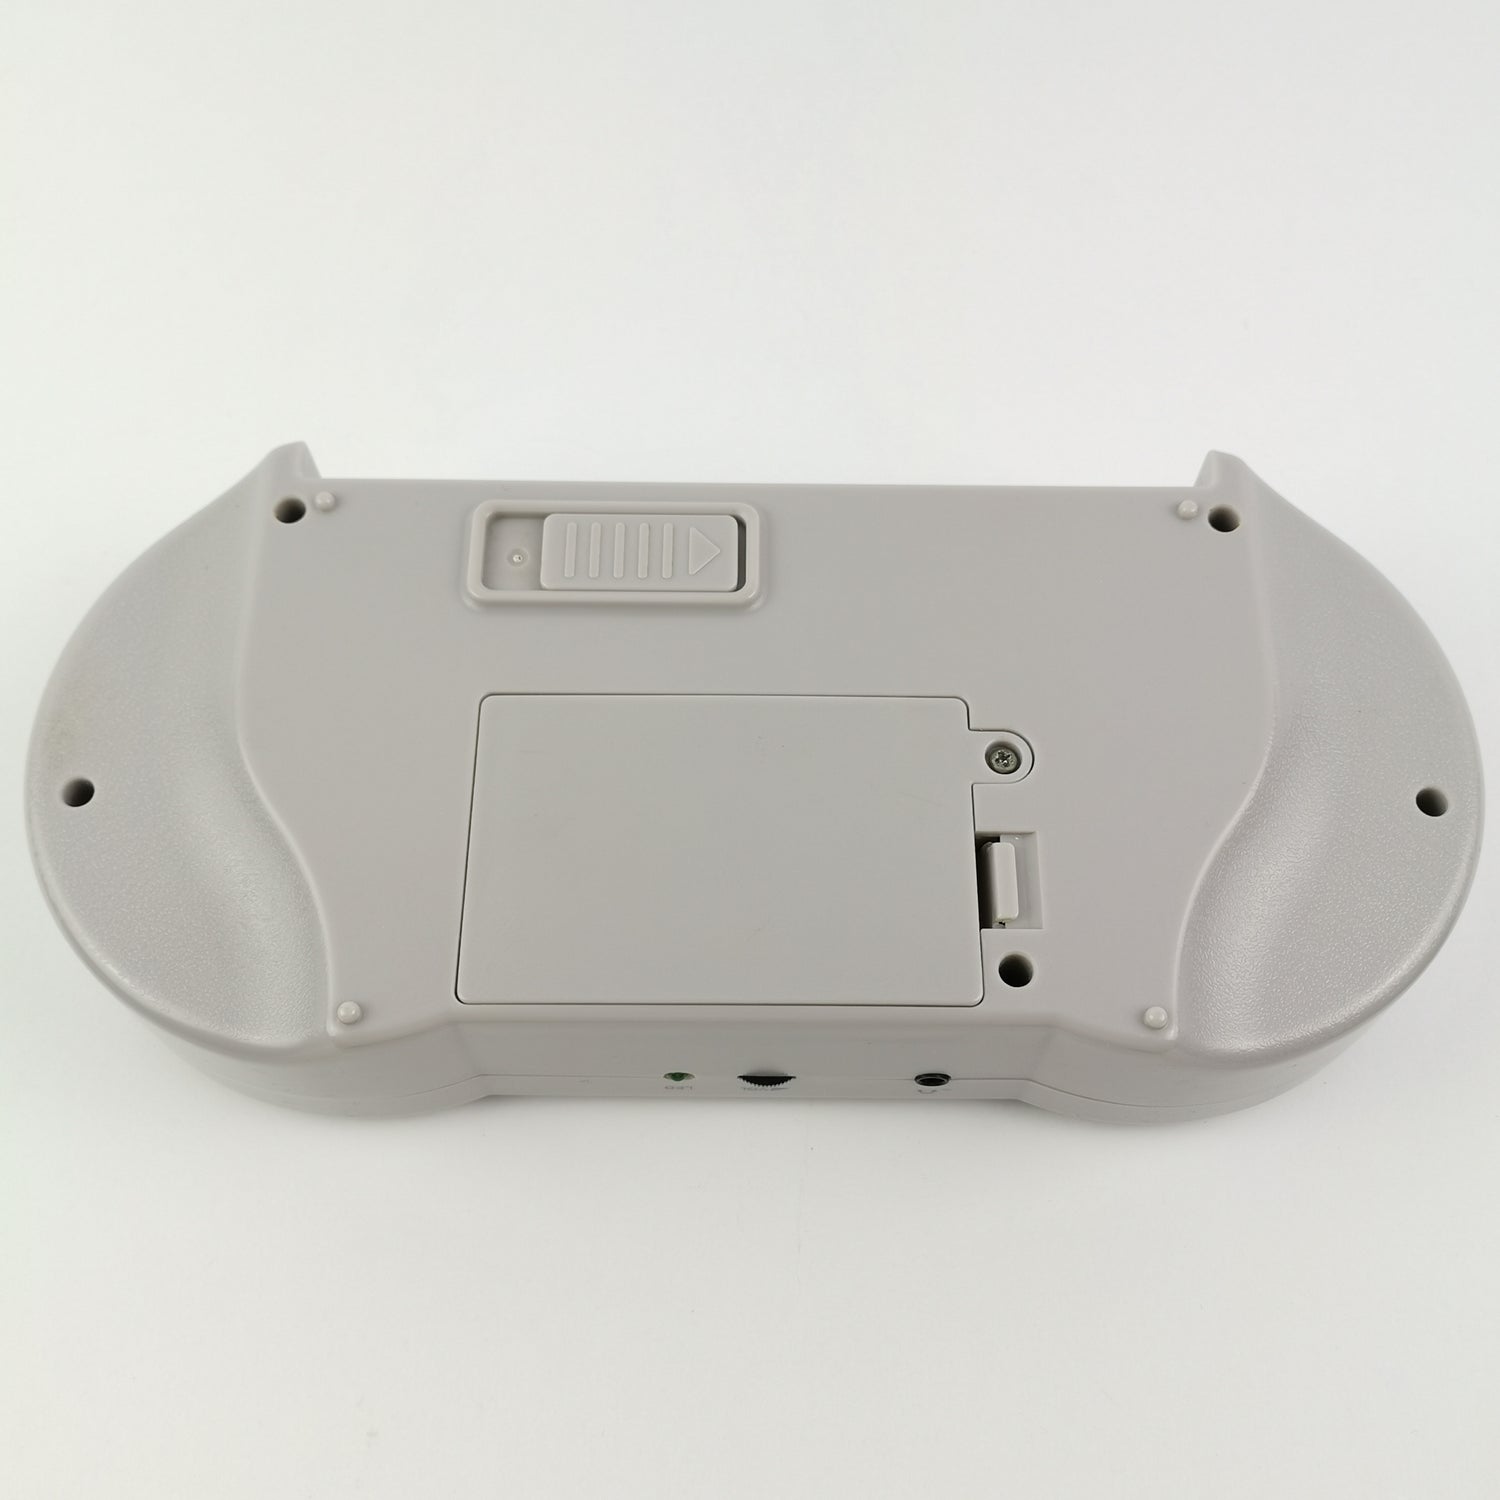 Handheld Konsole - SupaBoy von Hyperkin SNES & SFC JAPAN OVP